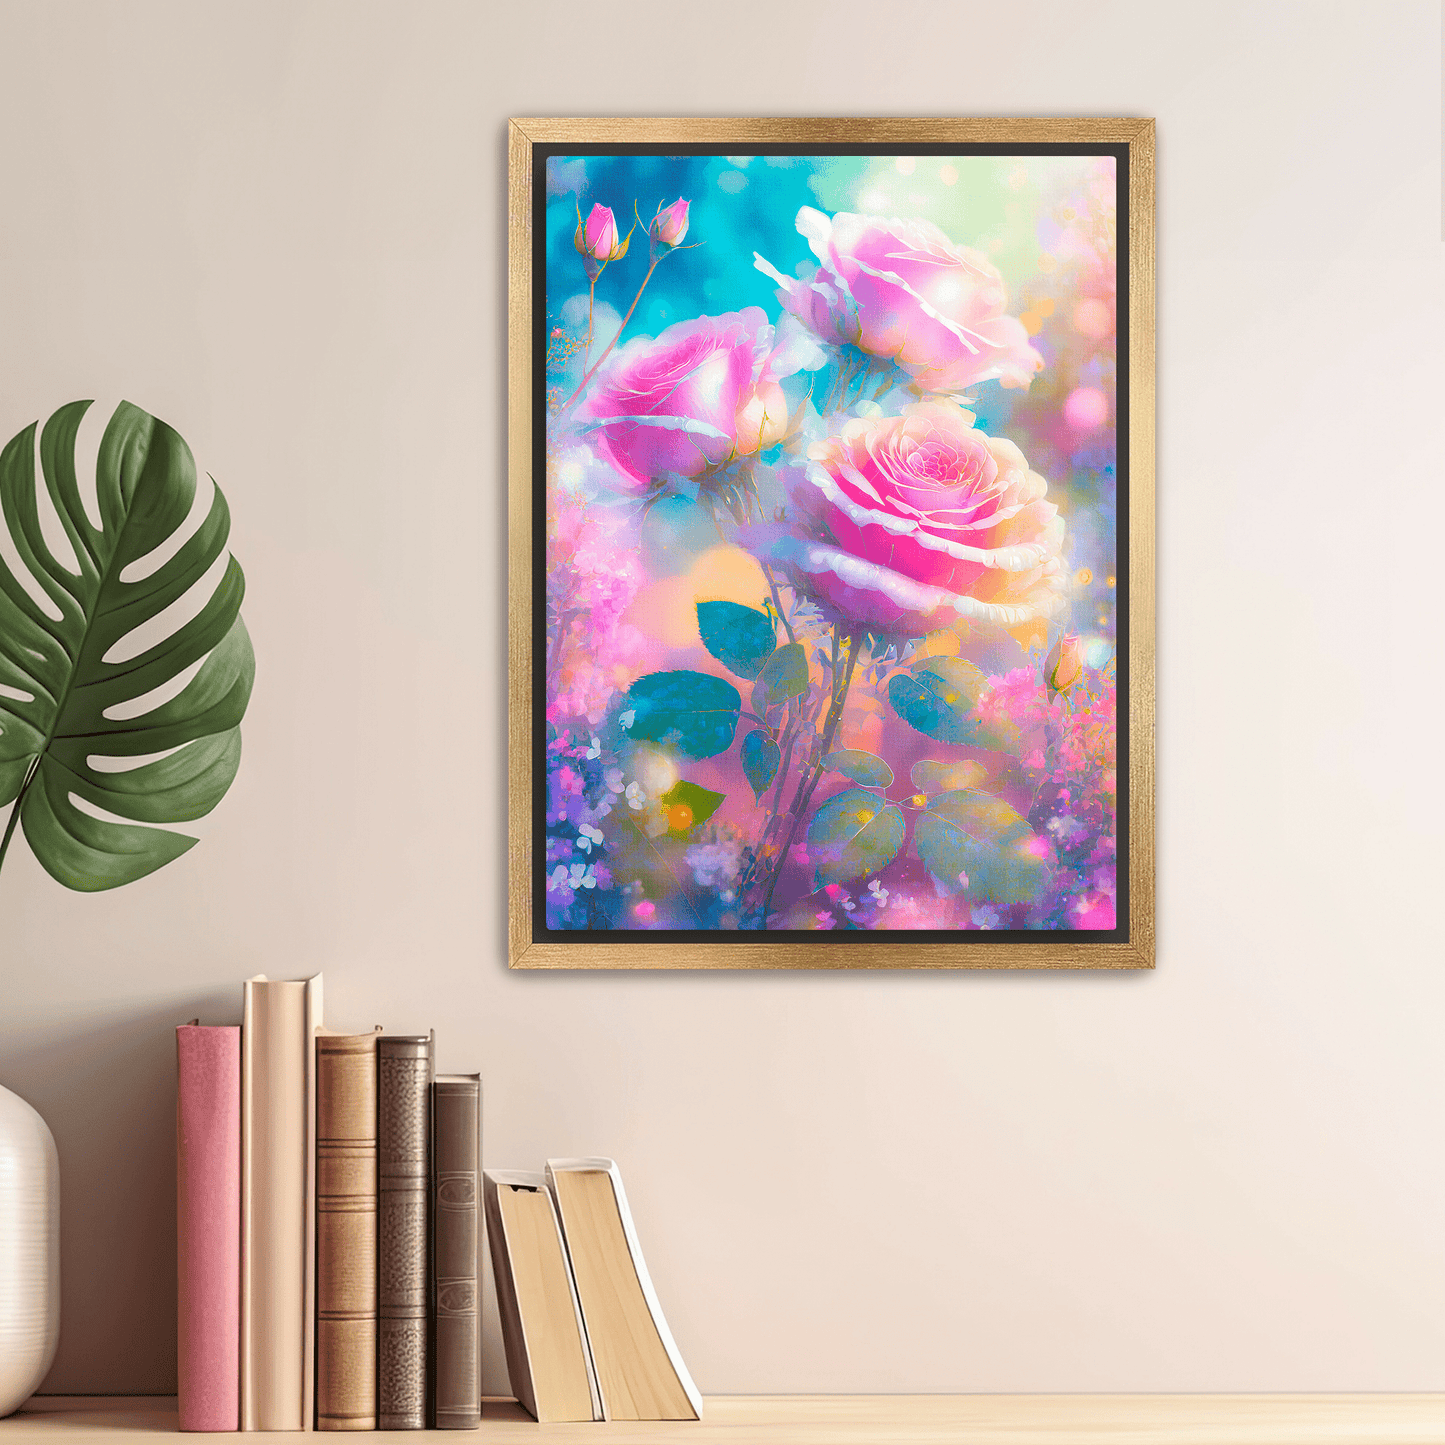 Celestial Garden - Canvas Wrap - Premium Canvas Print